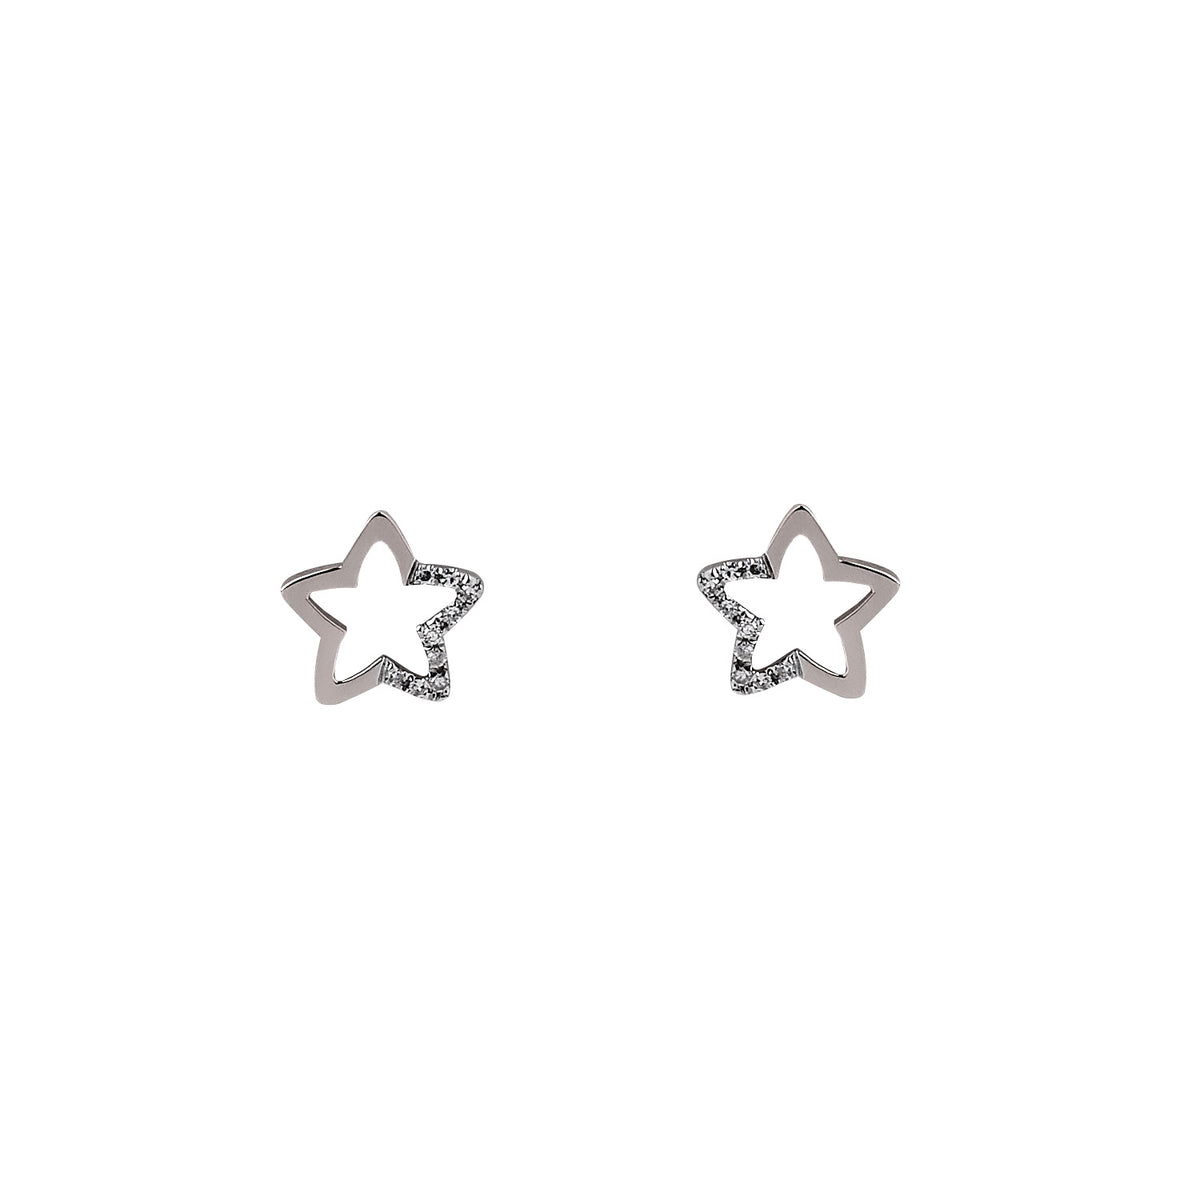 Diamond star earrings. Stud Earrings. Σκουλαρίκι αστέρι.